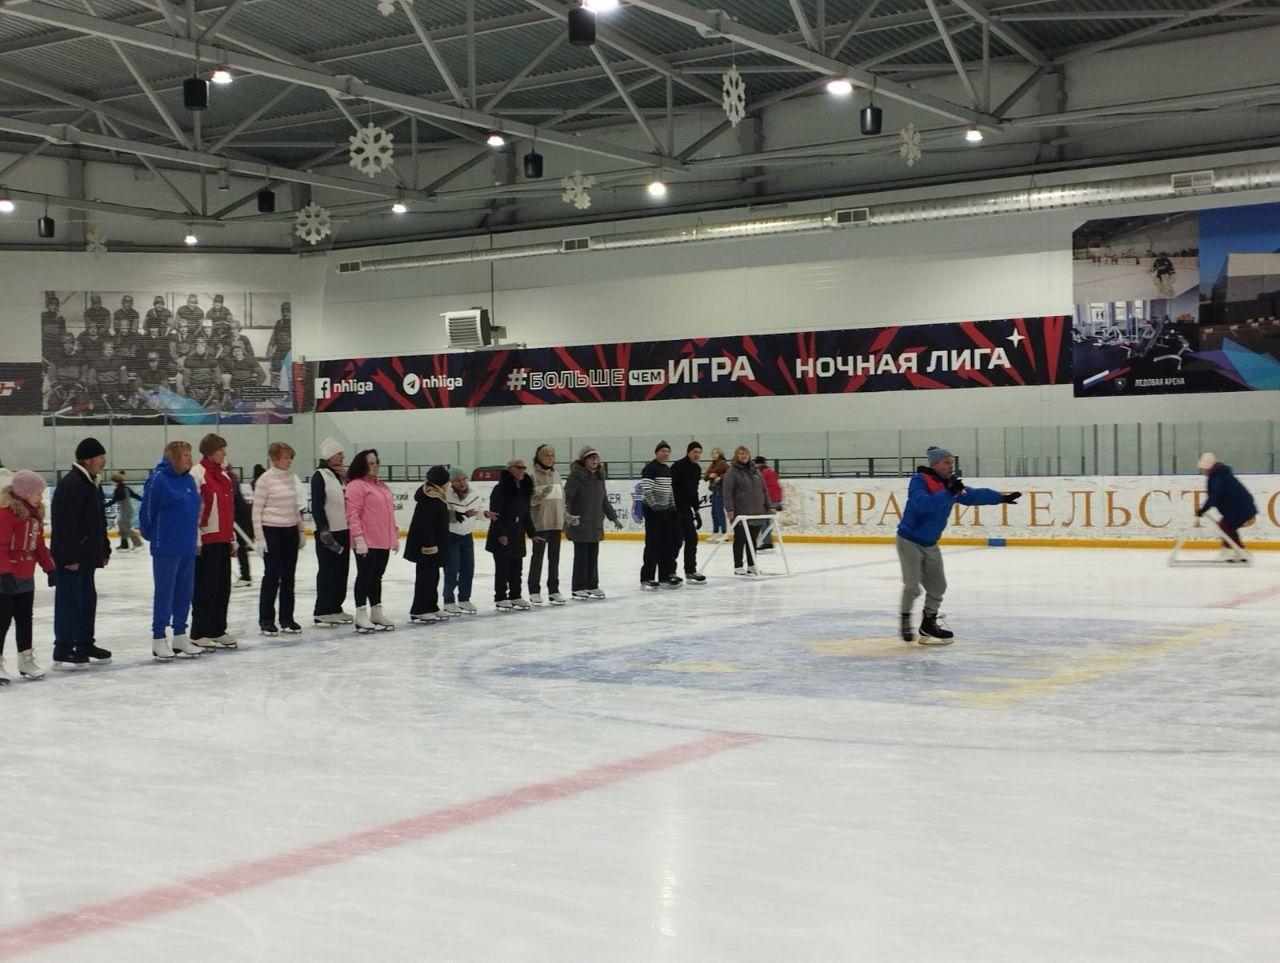 Активные долголеты из Дубны освоили катание на льду на мастер-классе